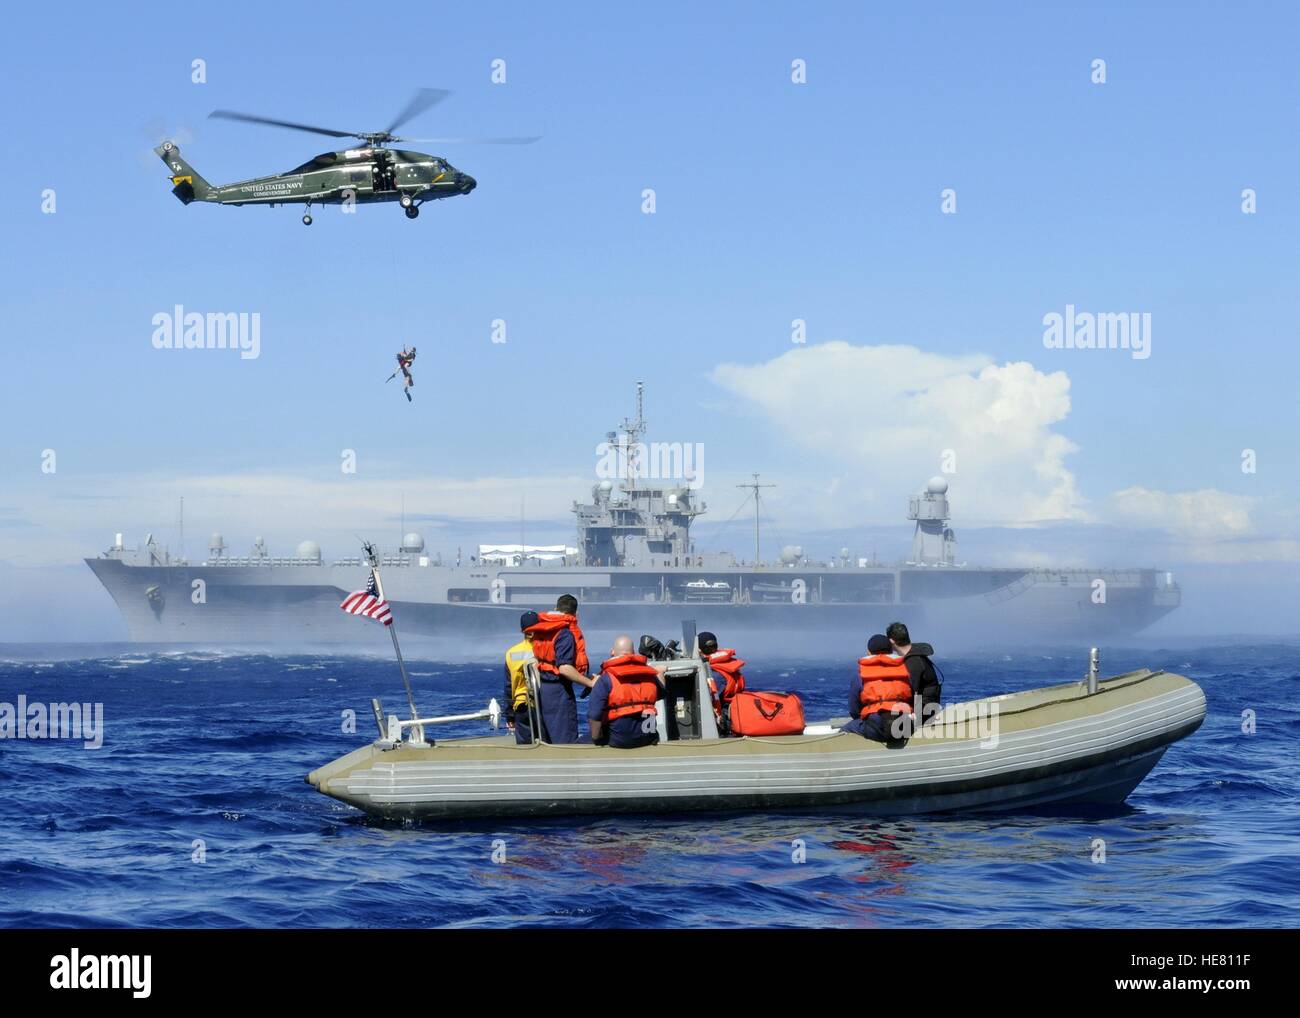 Les marins américains sur un radeau pneumatique regarder un pont aérien d'hélicoptères de recherche et de sauvetage d'un nageur de l'océan lors d'un exercice d'entraînement à côté de l'USN Blue Ridge-class USS Blue Ridge le 18 février 2009 dans l'océan Pacifique. Banque D'Images